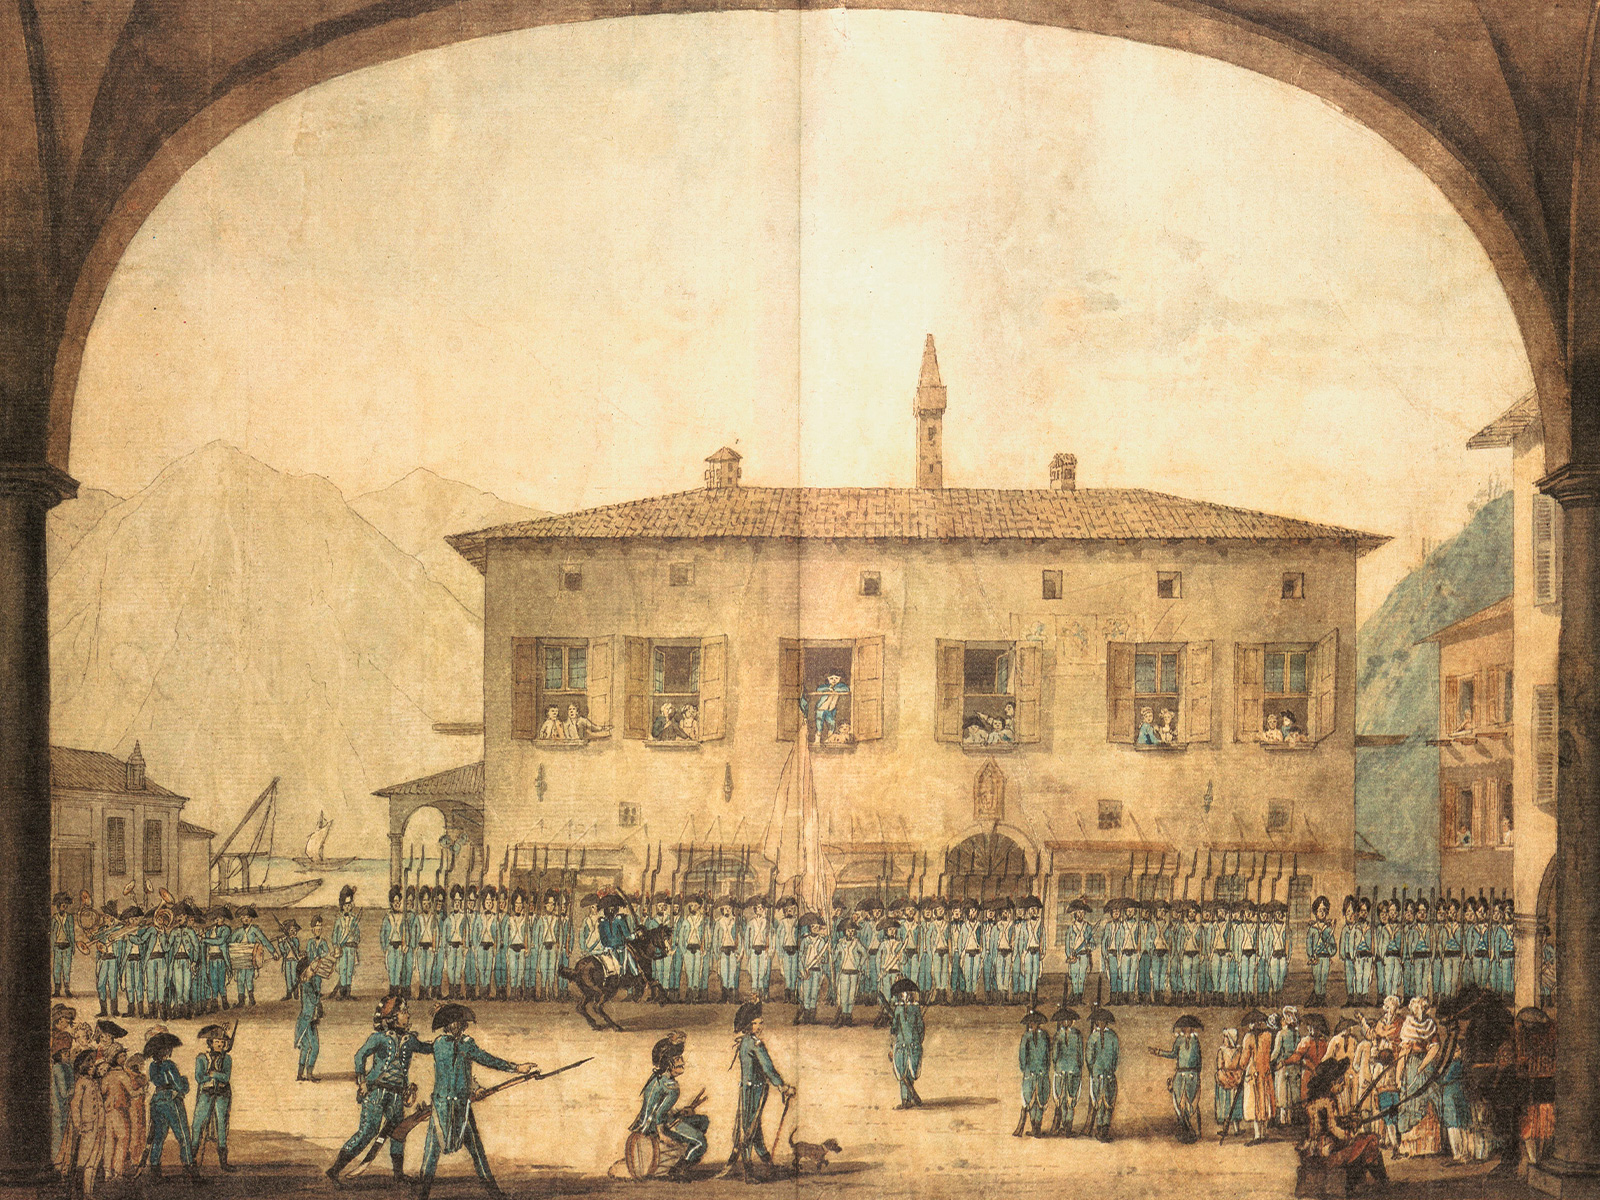 ルガーノ義勇軍、1798年頃、ロッコ・トリチェッリによるペン・インク画